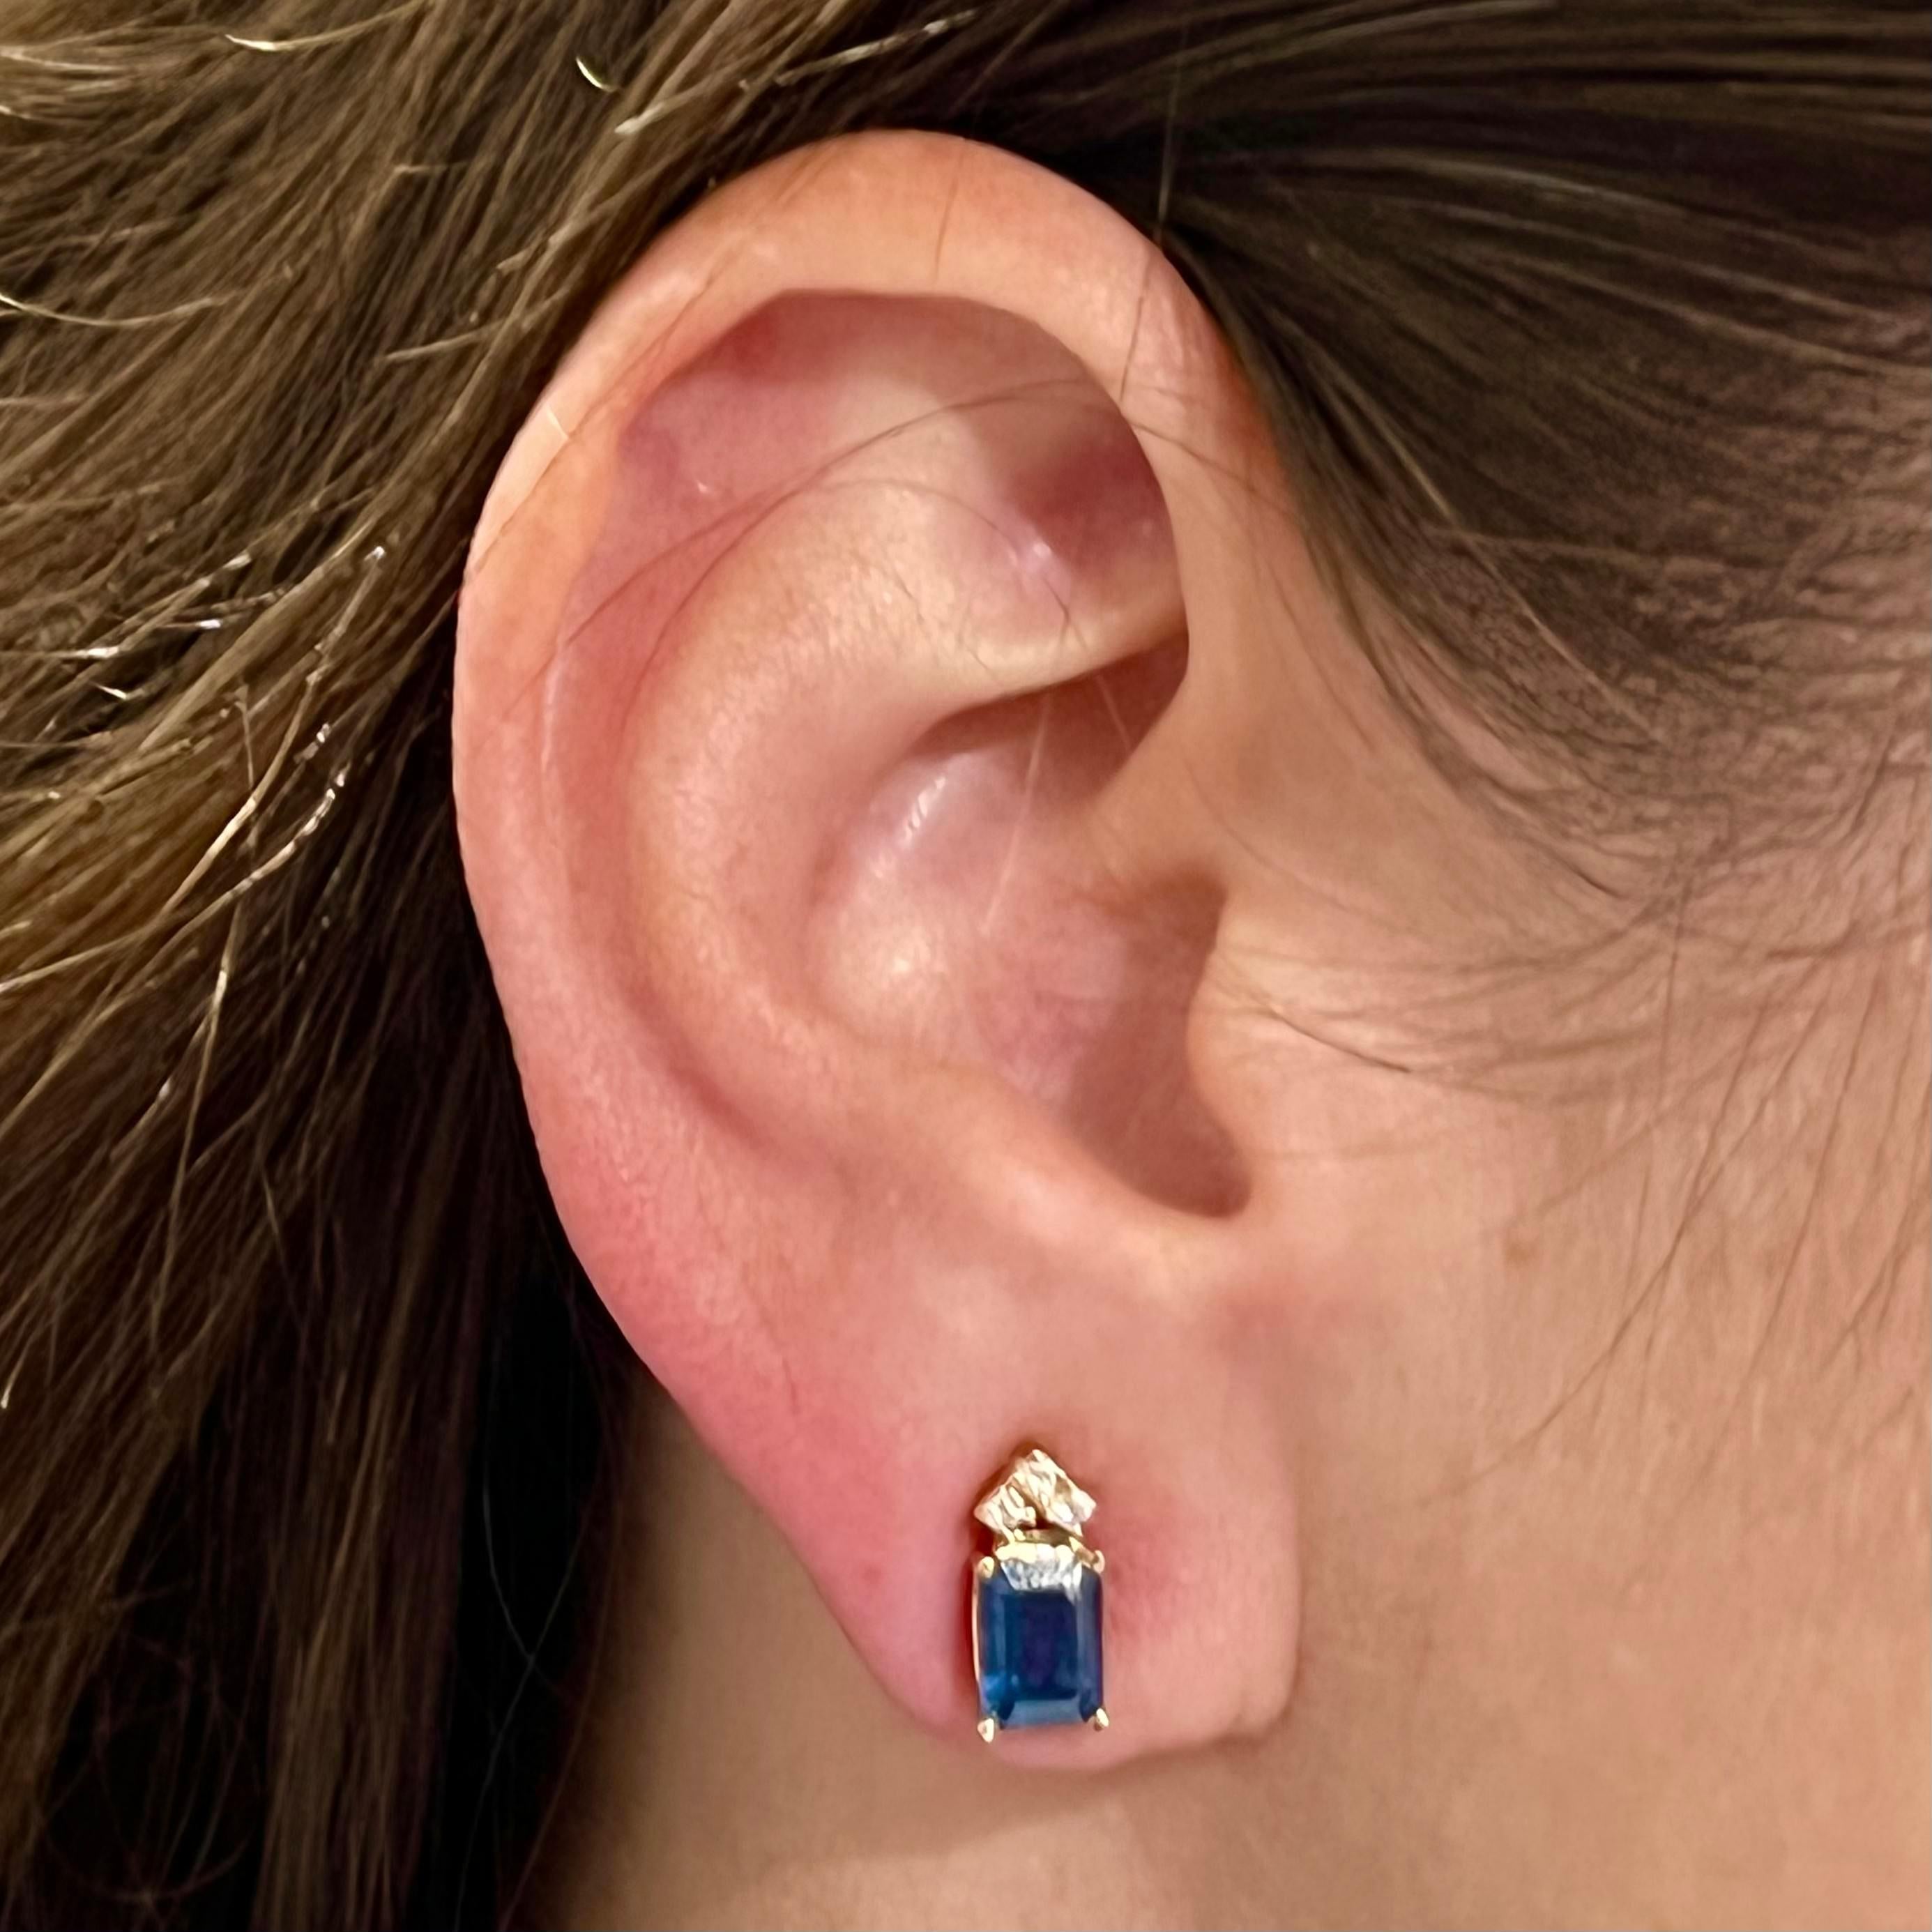 Natürlicher Saphir Diamant Ohrringe 14k Gold 2,14 TCW zertifiziert $2,950 121247

Dies ist ein einzigartiges, maßgeschneidertes, glamouröses Schmuckstück!

Nichts sagt mehr 